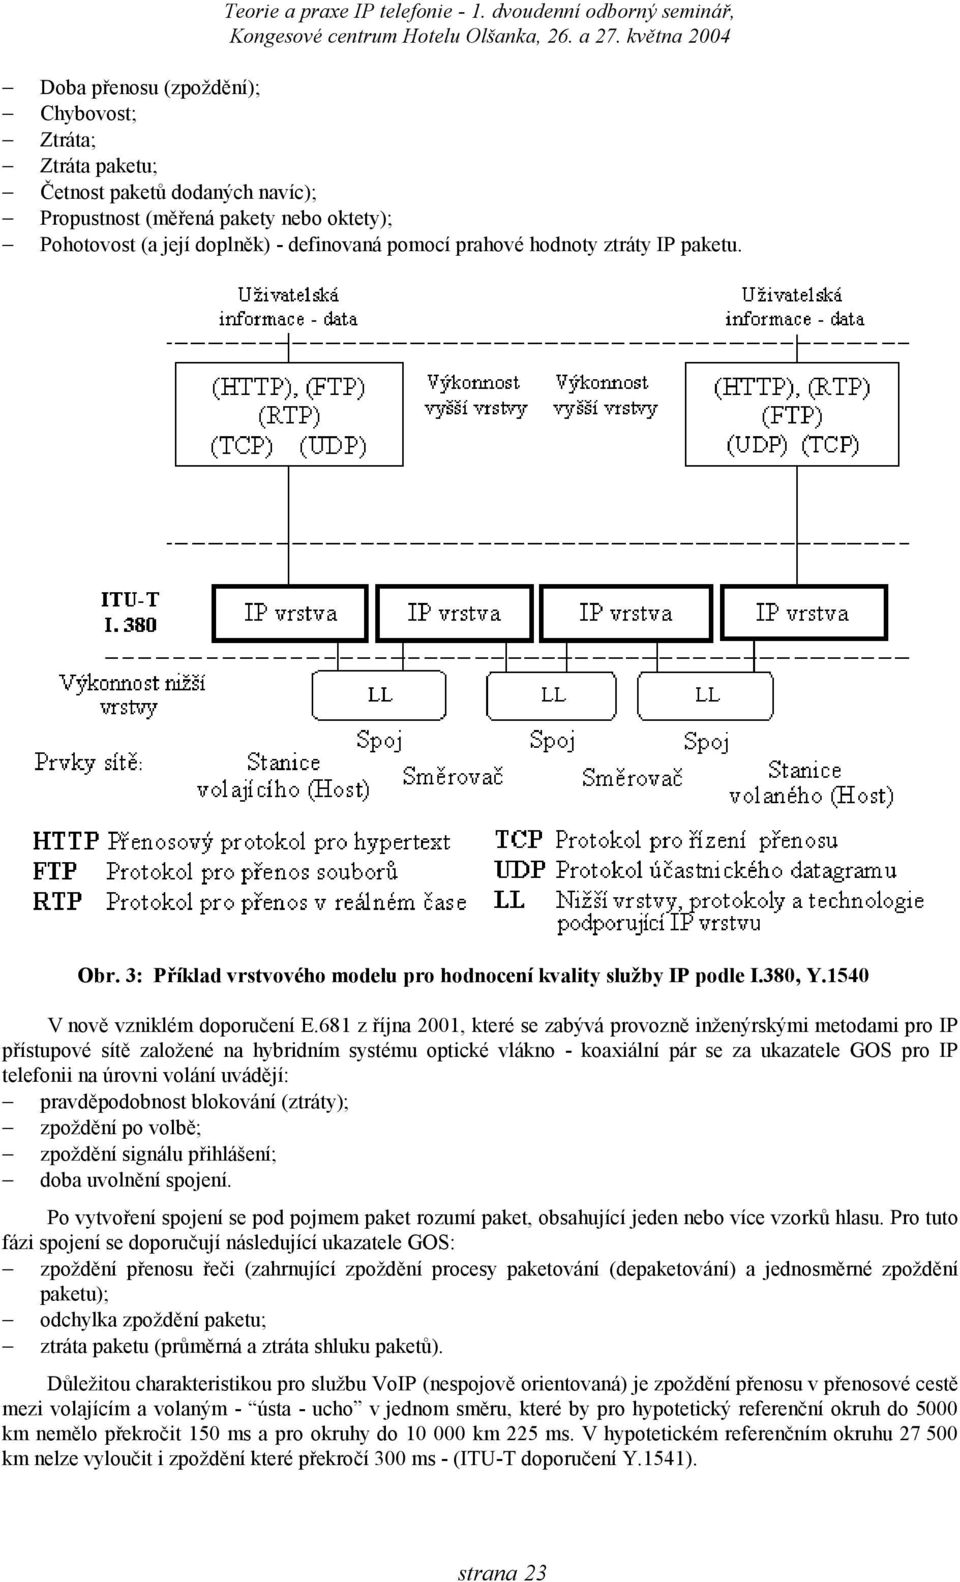 681 z října 2001, které se zabývá provozně inženýrskými metodami pro IP přístupové sítě založené na hybridním systému optické vlákno - koaxiální pár se za ukazatele GOS pro IP telefonii na úrovni